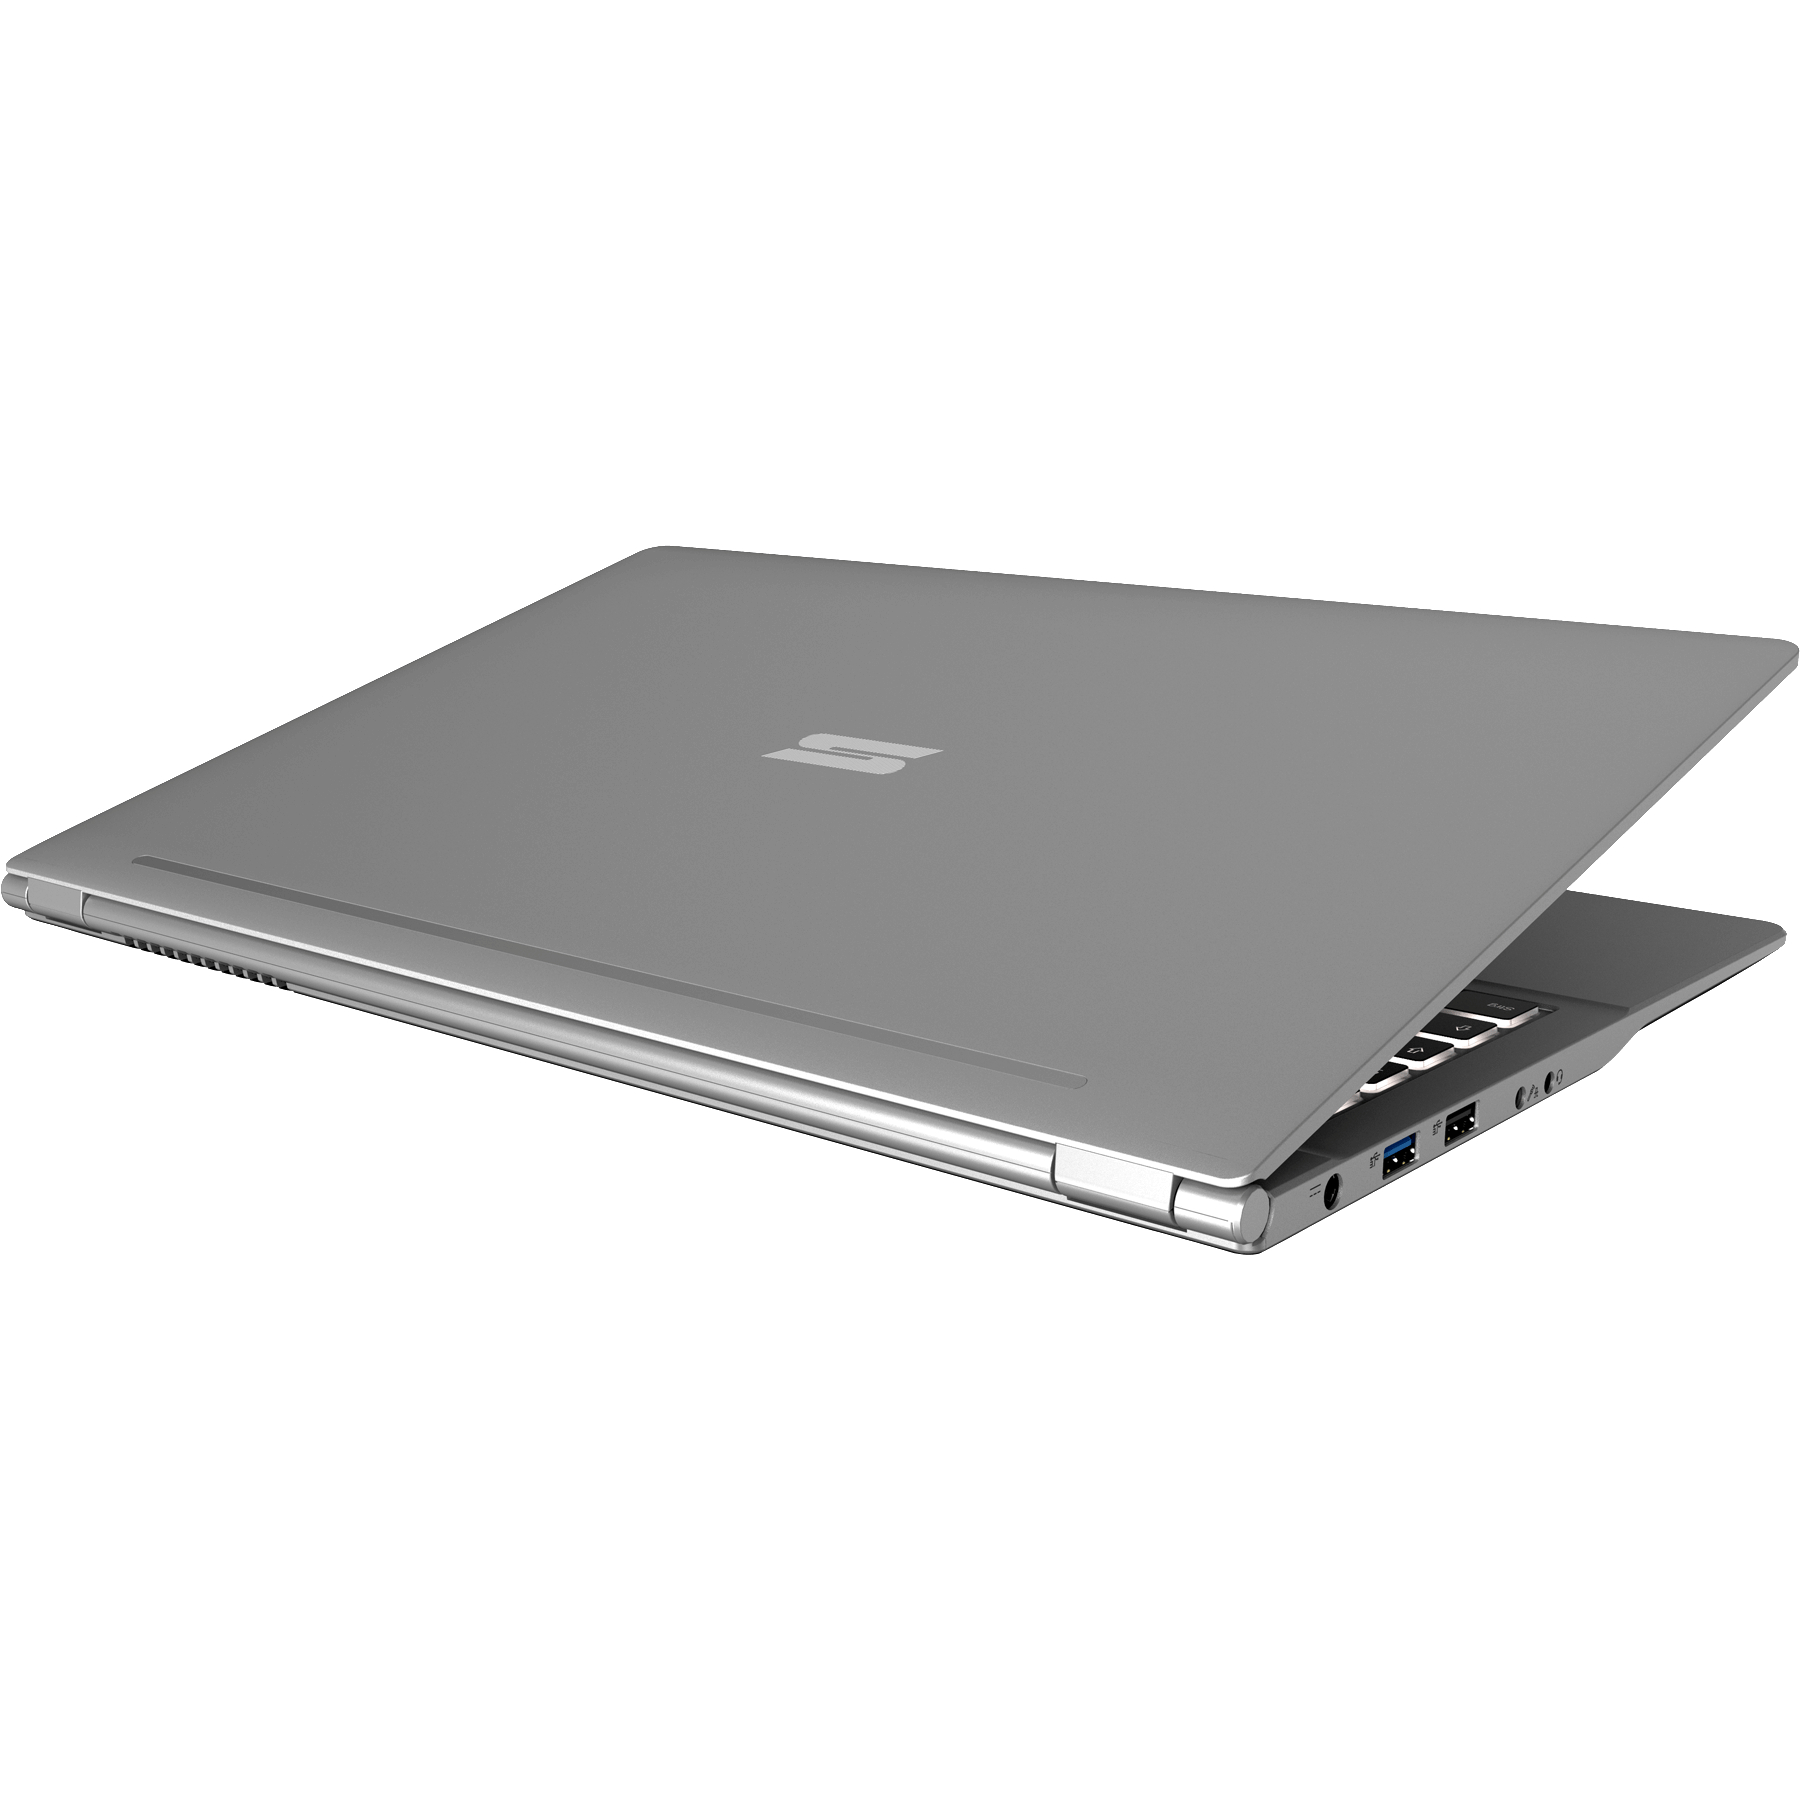 SCHENKER SLIM GB Grafik, Intel mSSD, i7 Grau Prozessor, Notebook 32 mit L19twj, Intel® Display, 500 - GB RAM, 15,6 UHD 15 Zoll Core™